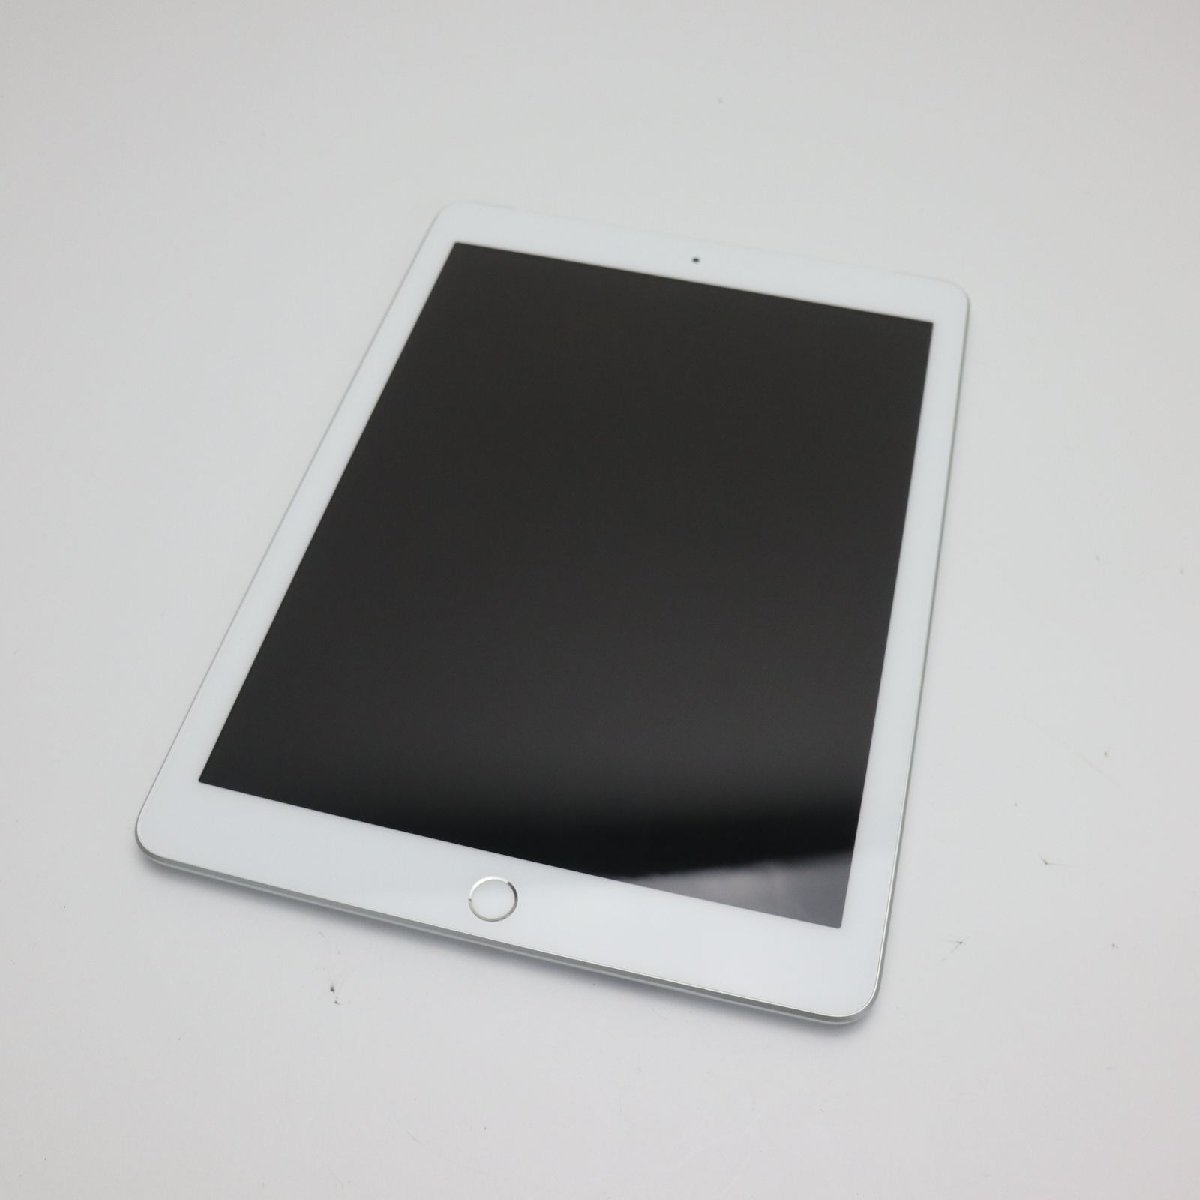 使い勝手の良い 白ロム タブレット シルバー 32GB 第6世代 iPad SIMフリー 超美品 中古 土日祝発送OK あすつく Apple 即日発送 iPad本体